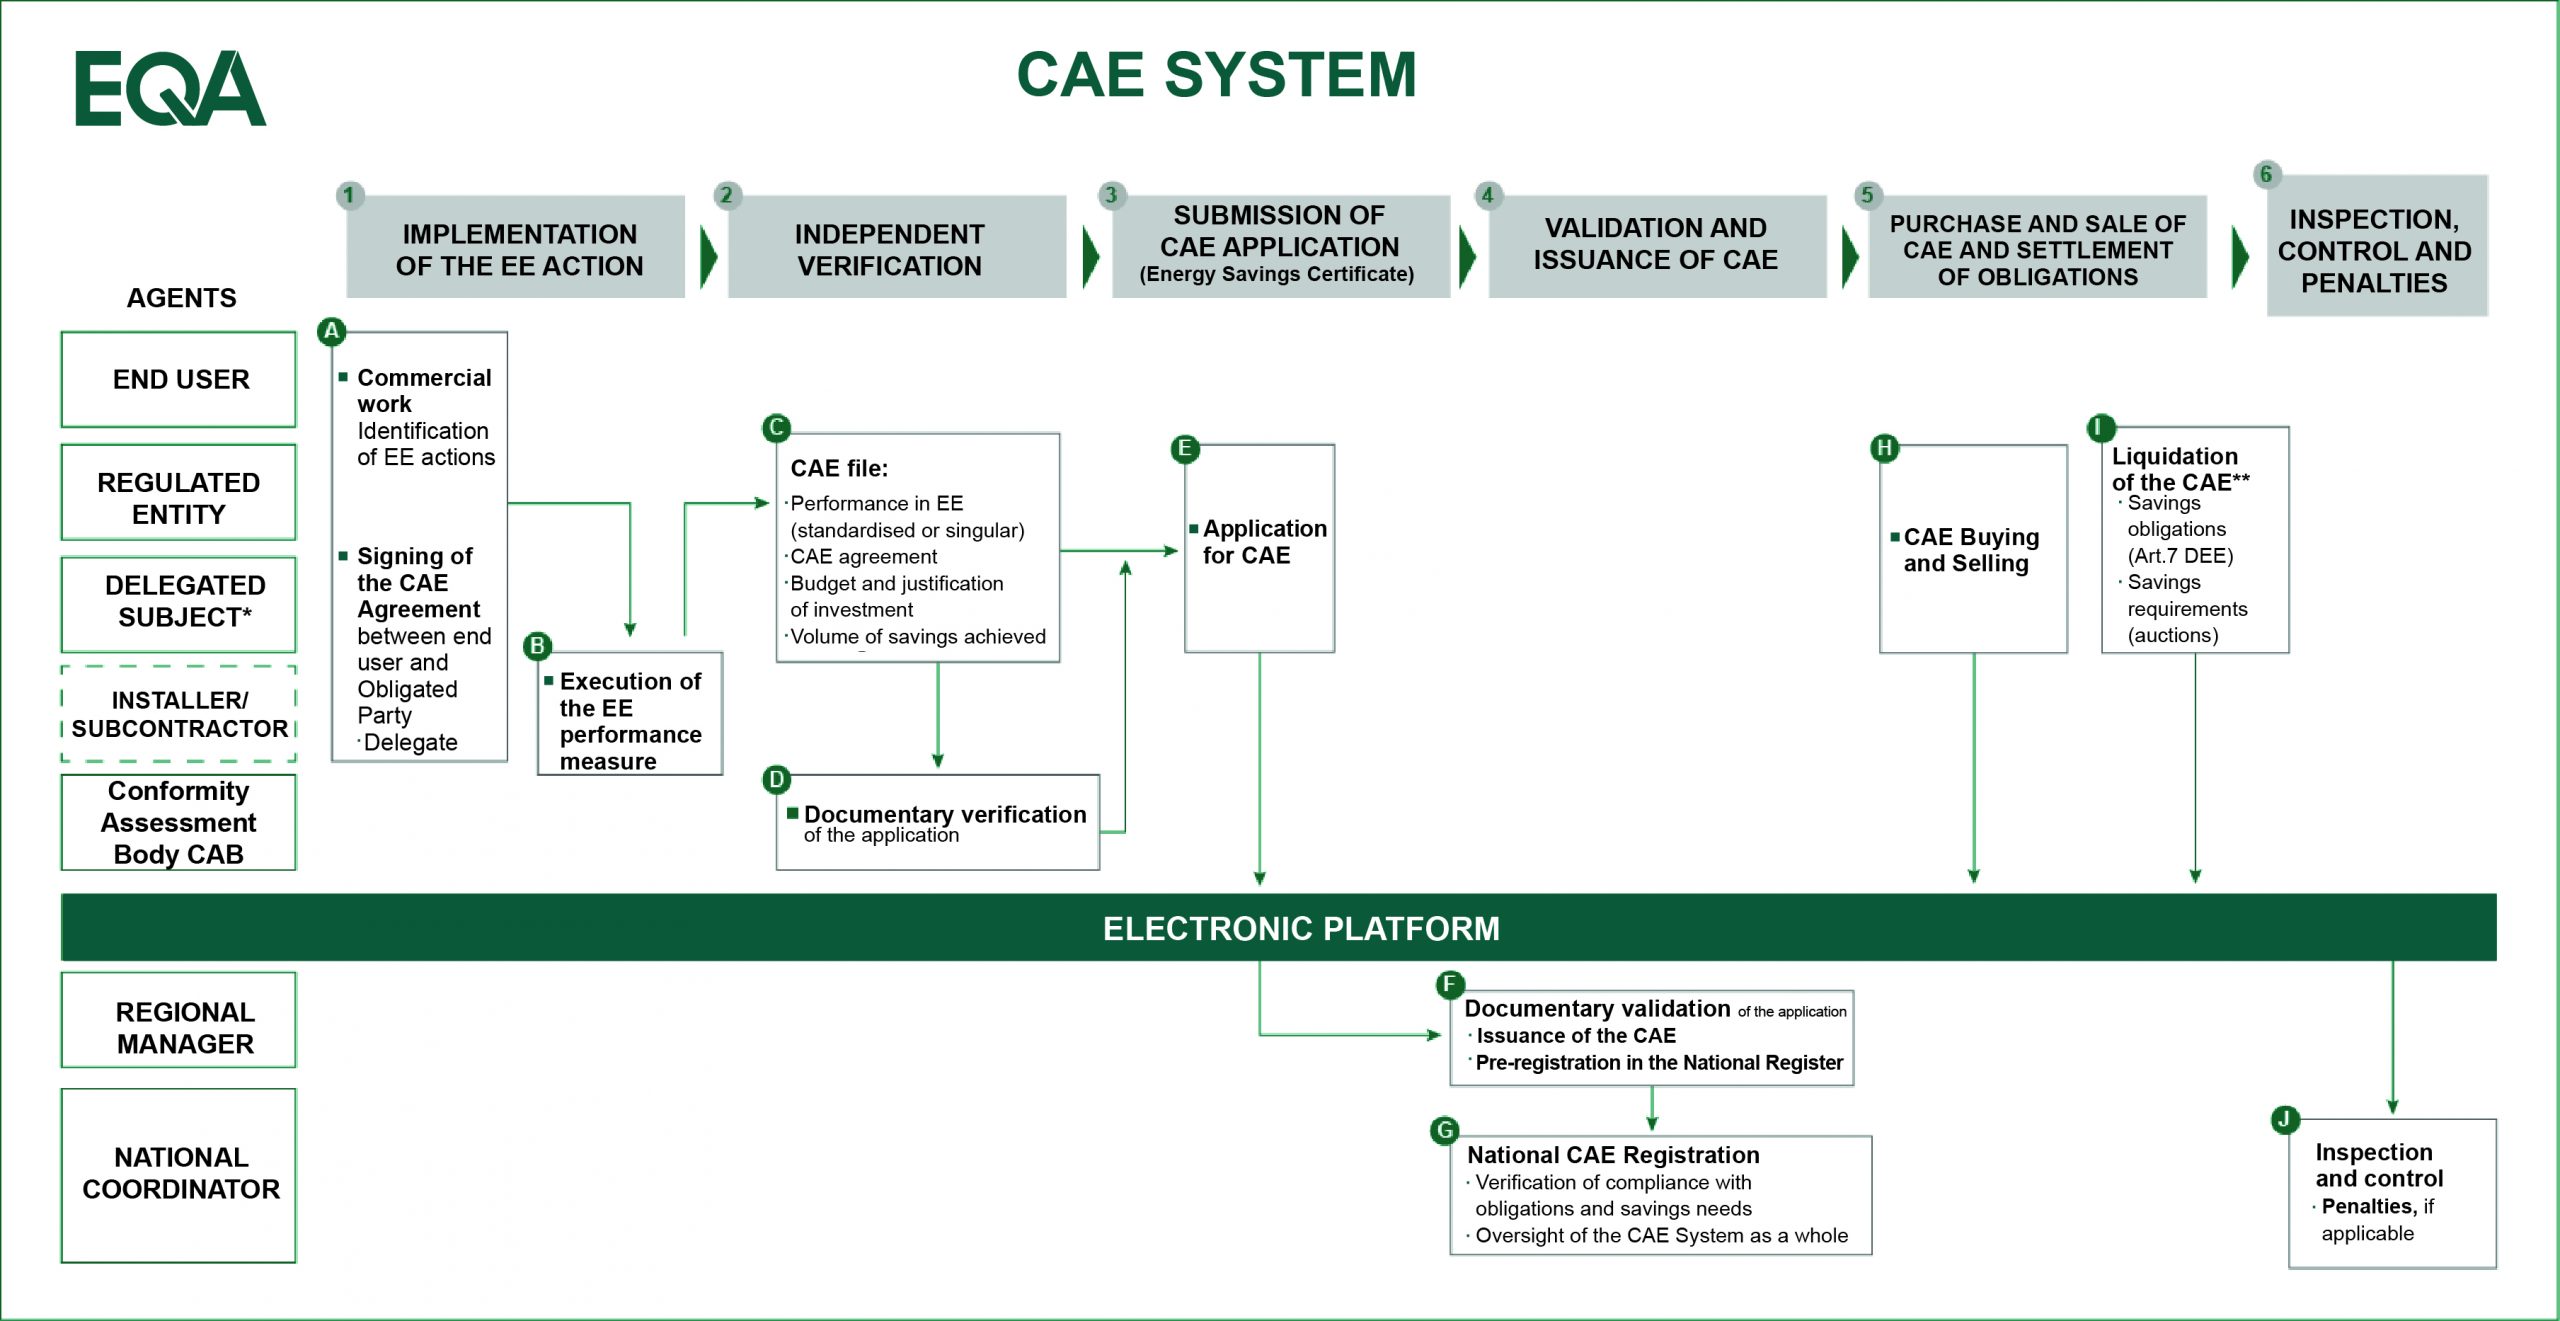 Sistema de CAE (Certificado de Ahorro Energético)